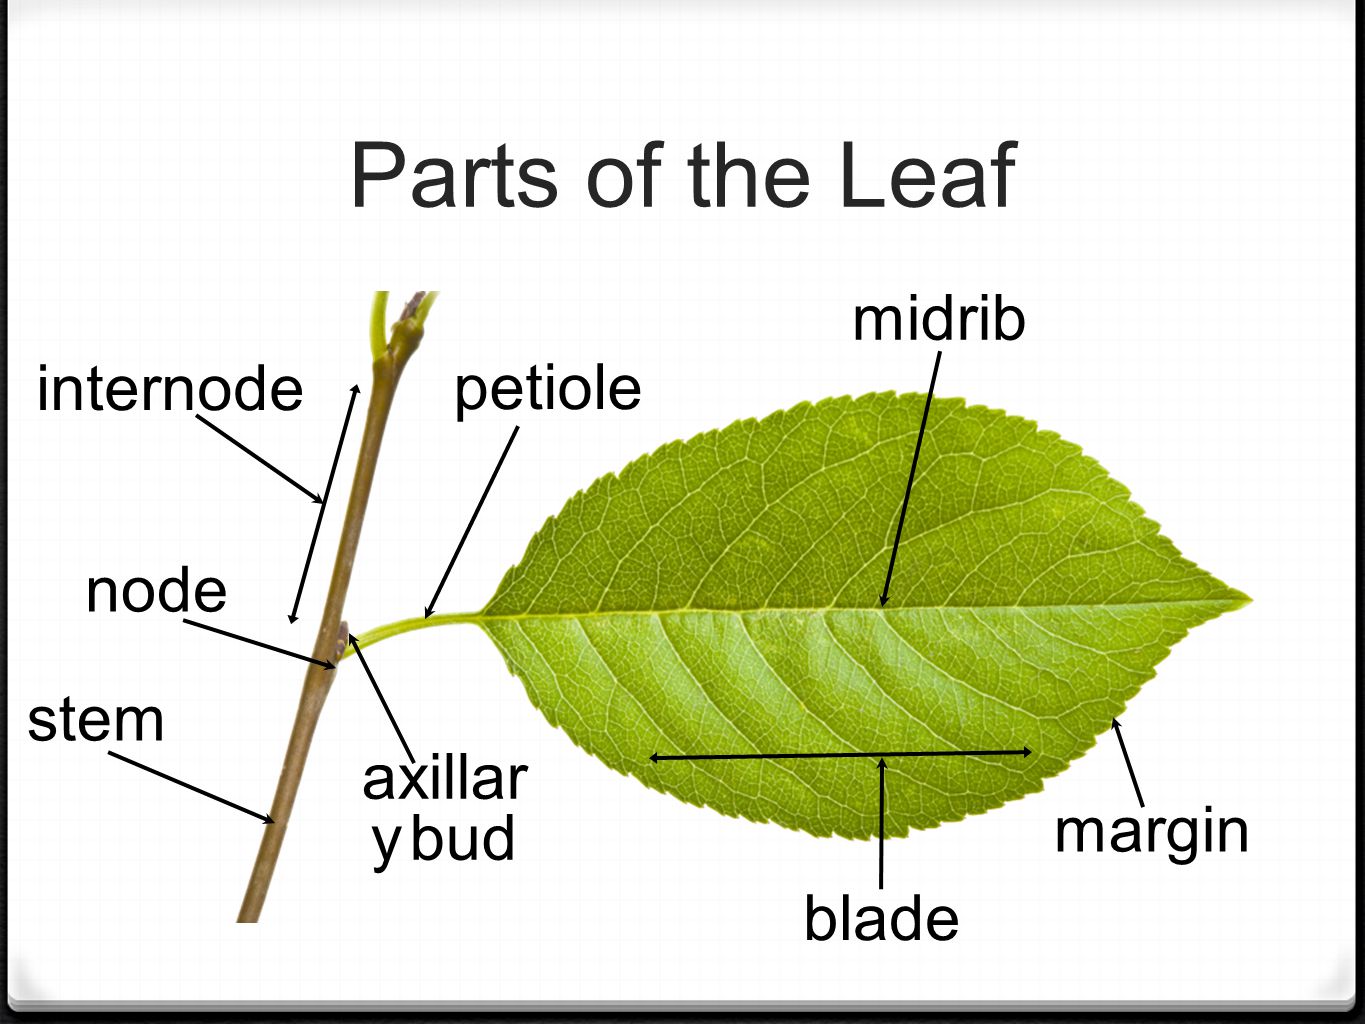 Parts of the Leaf petiole blade margin midrib axillar y bud stem internode node